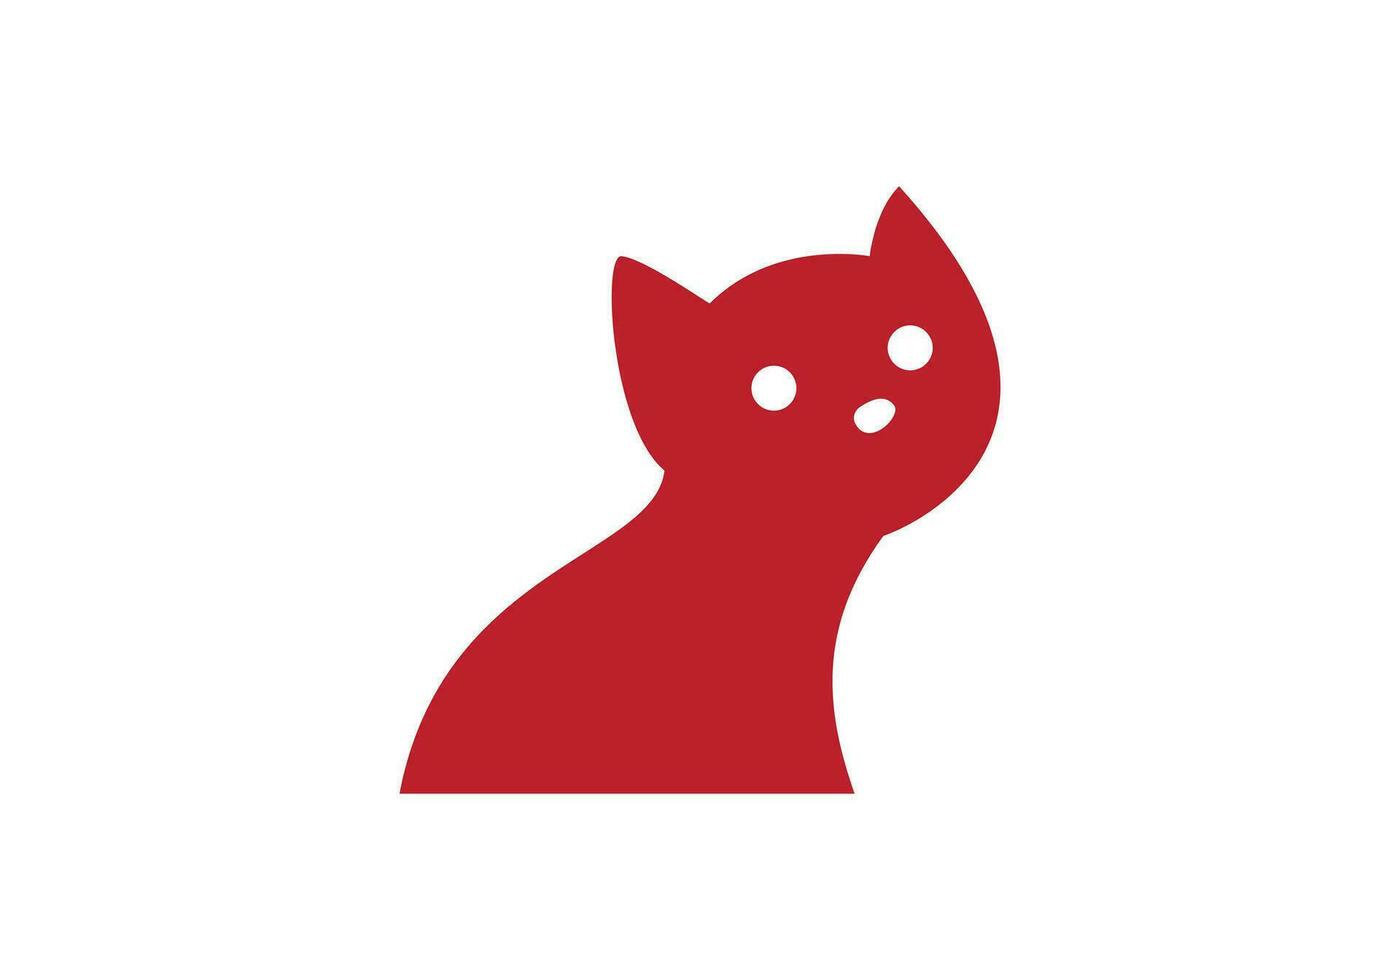 isto é uma gato logotipo Projeto para seu o negócio vetor